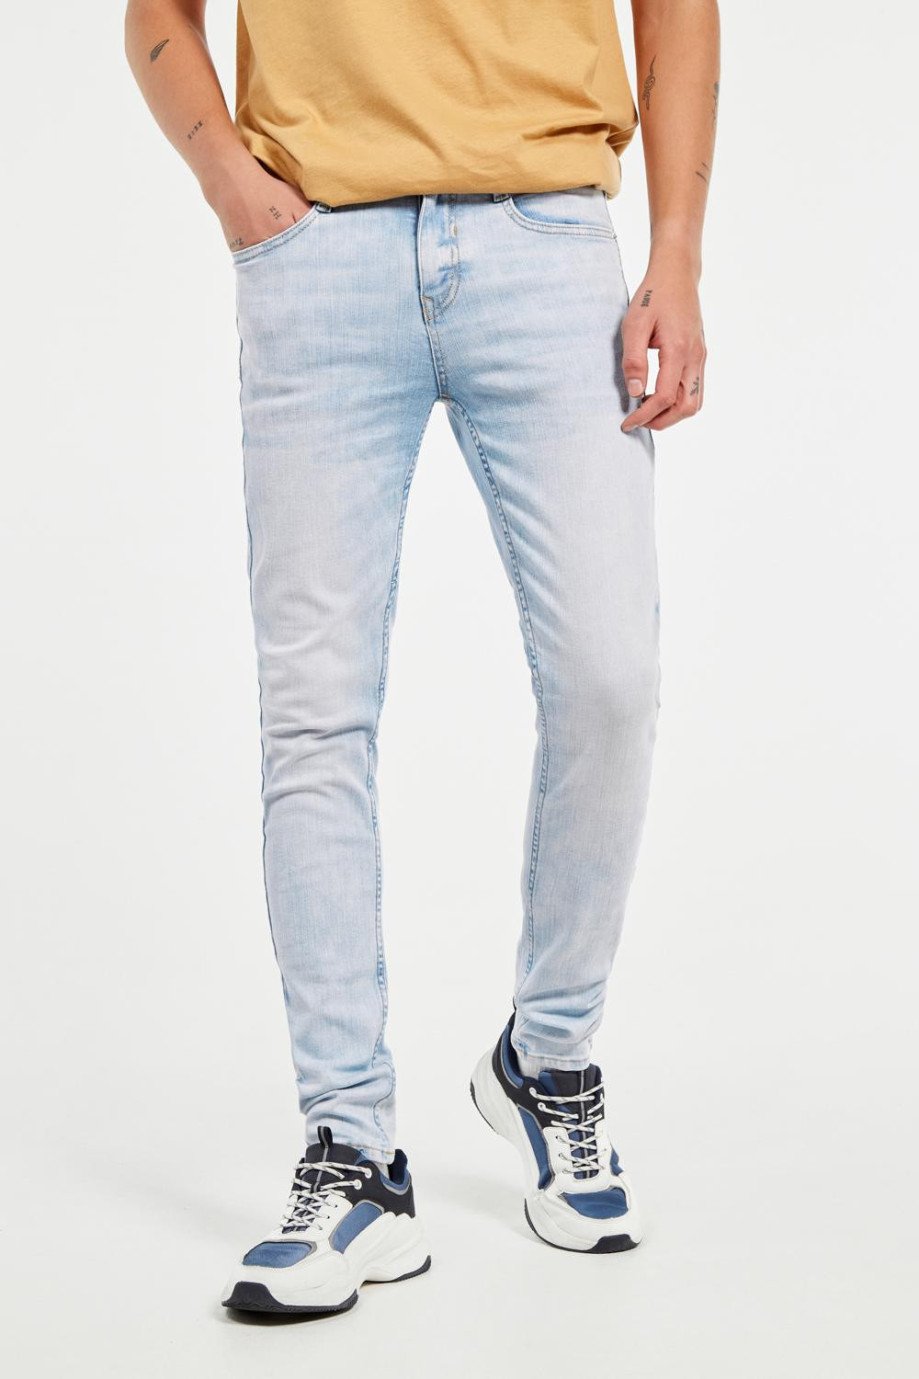 Jean azul claro súper skinny con efecto desteñido, bolsillos y tiro bajo